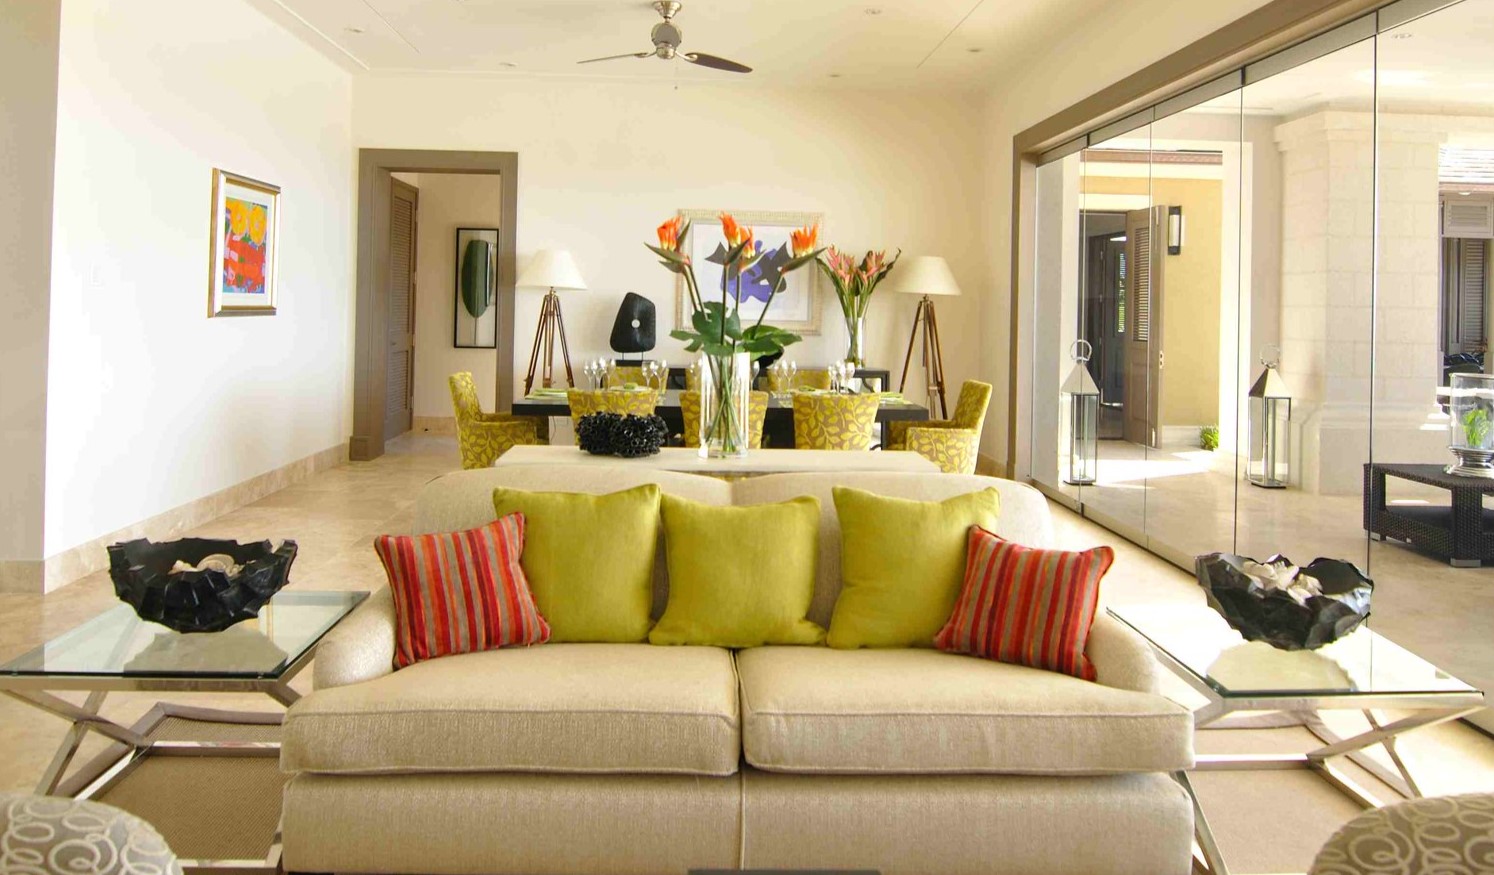 Подушки и стулья в салатовом цвете станут акцентом в светлой комнате